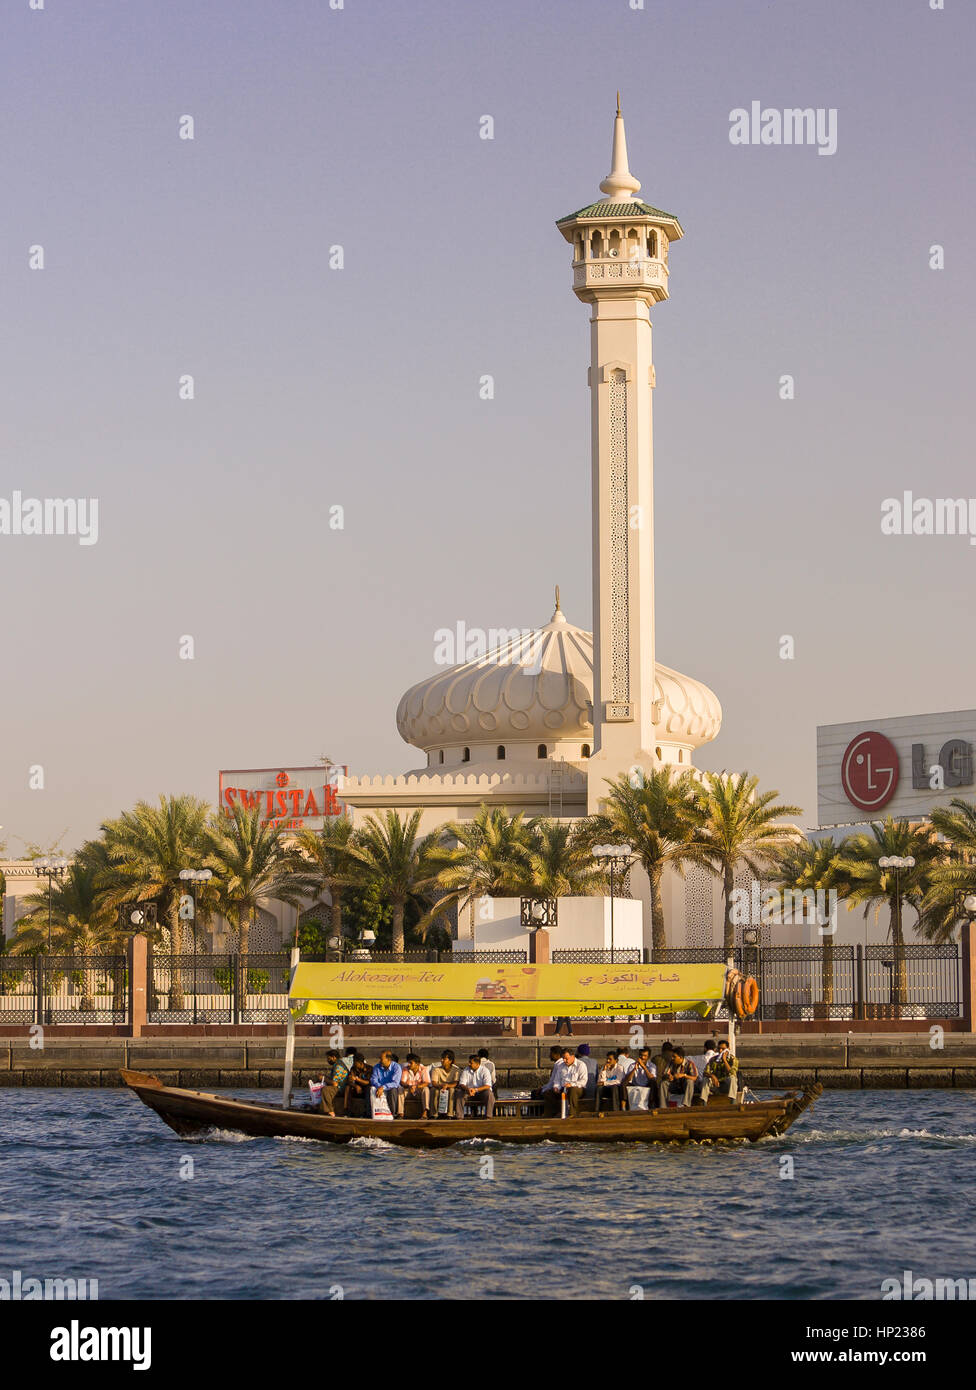 DUBAI, Emirati Arabi Uniti - acqua Abra taxi traghetti passeggeri su Dubai Creek con moschea a posteriori. Foto Stock